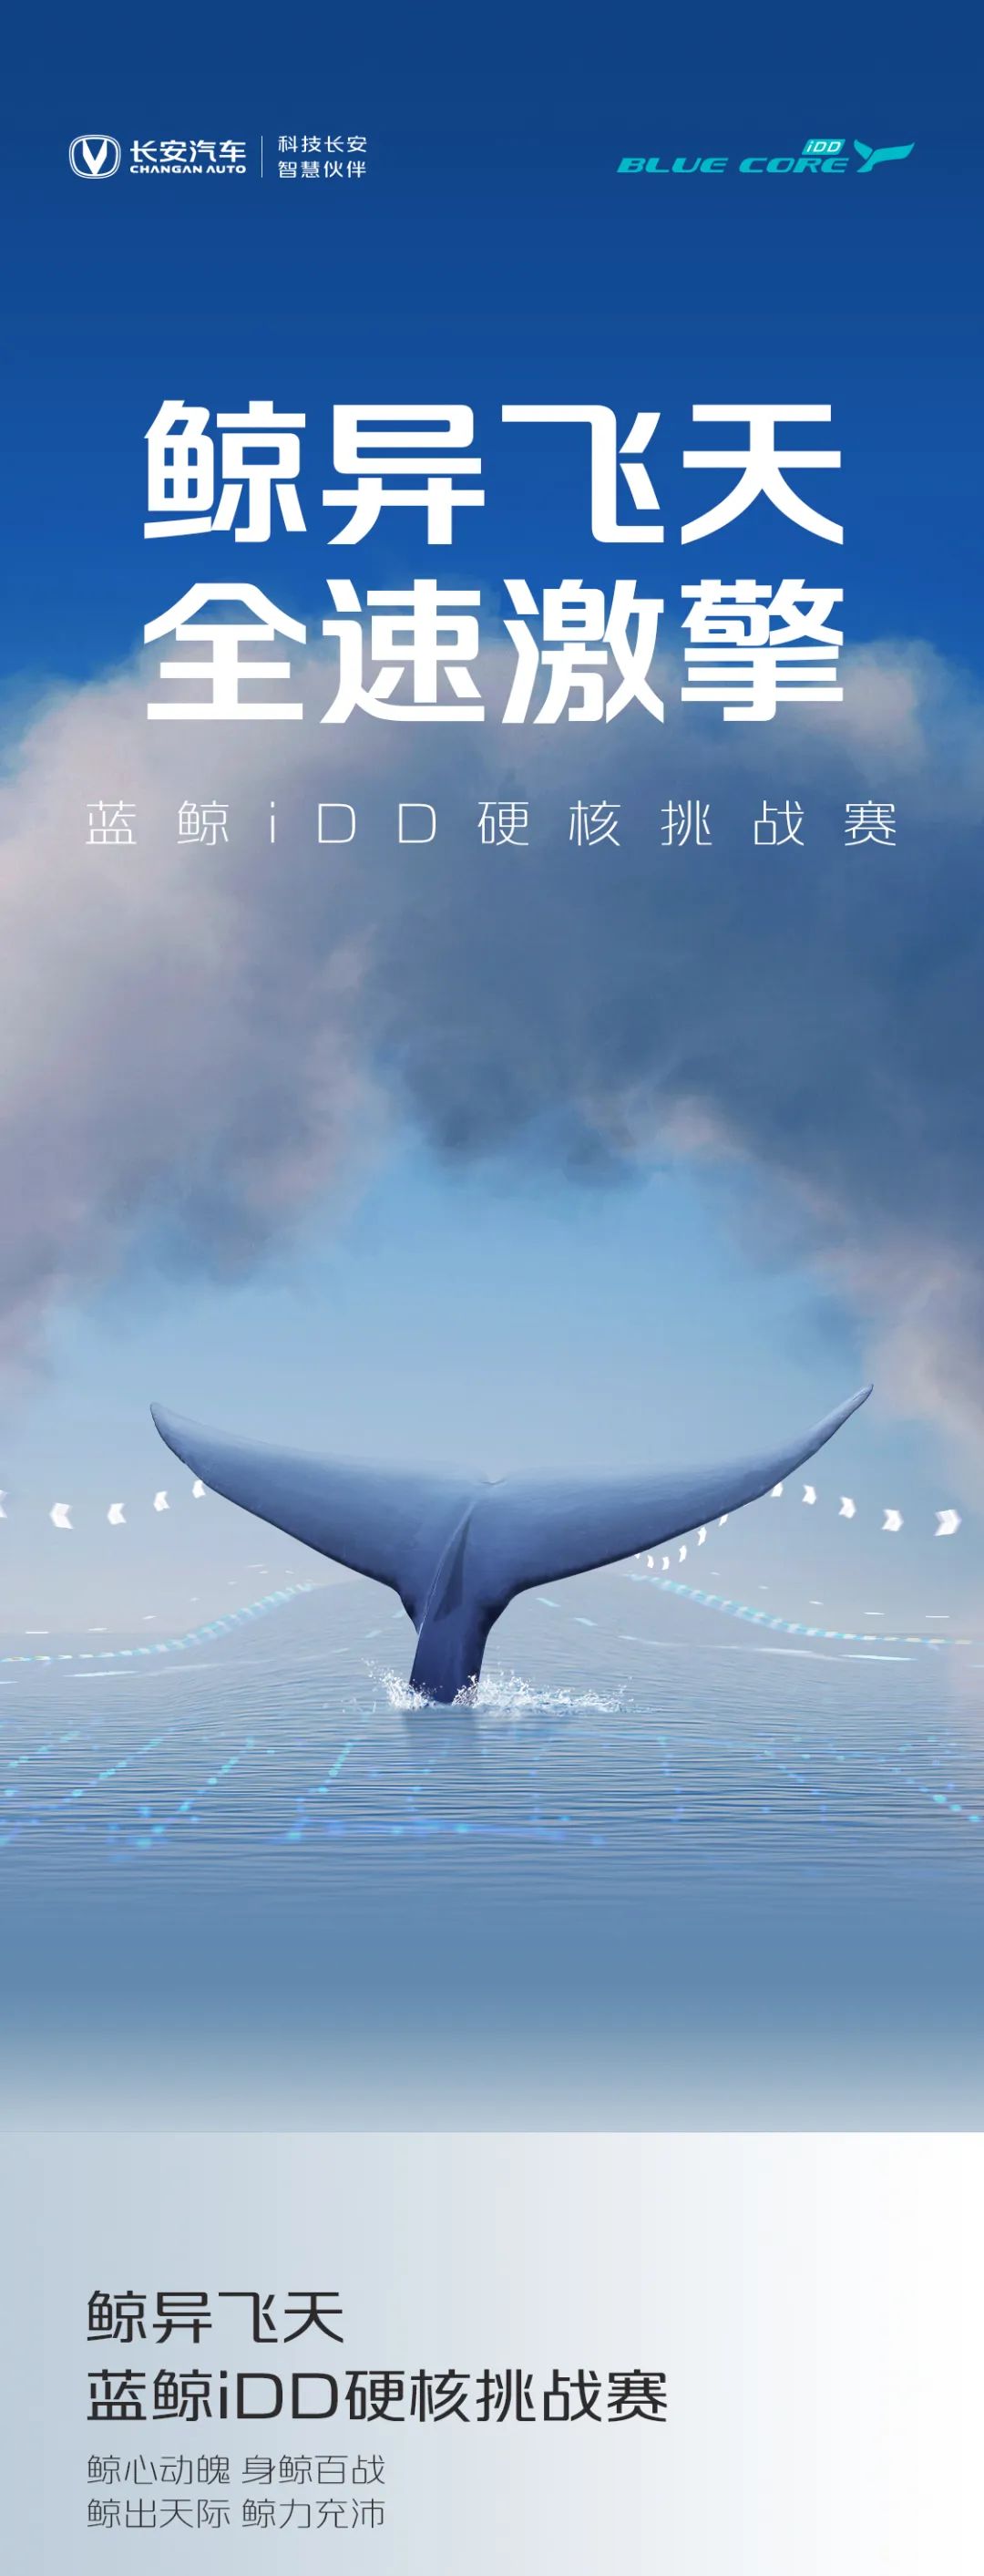 点击查看详细信息<br>标题：蓝鲸iDD硬核挑战赛丨高能无惧挑战 阅读次数：13